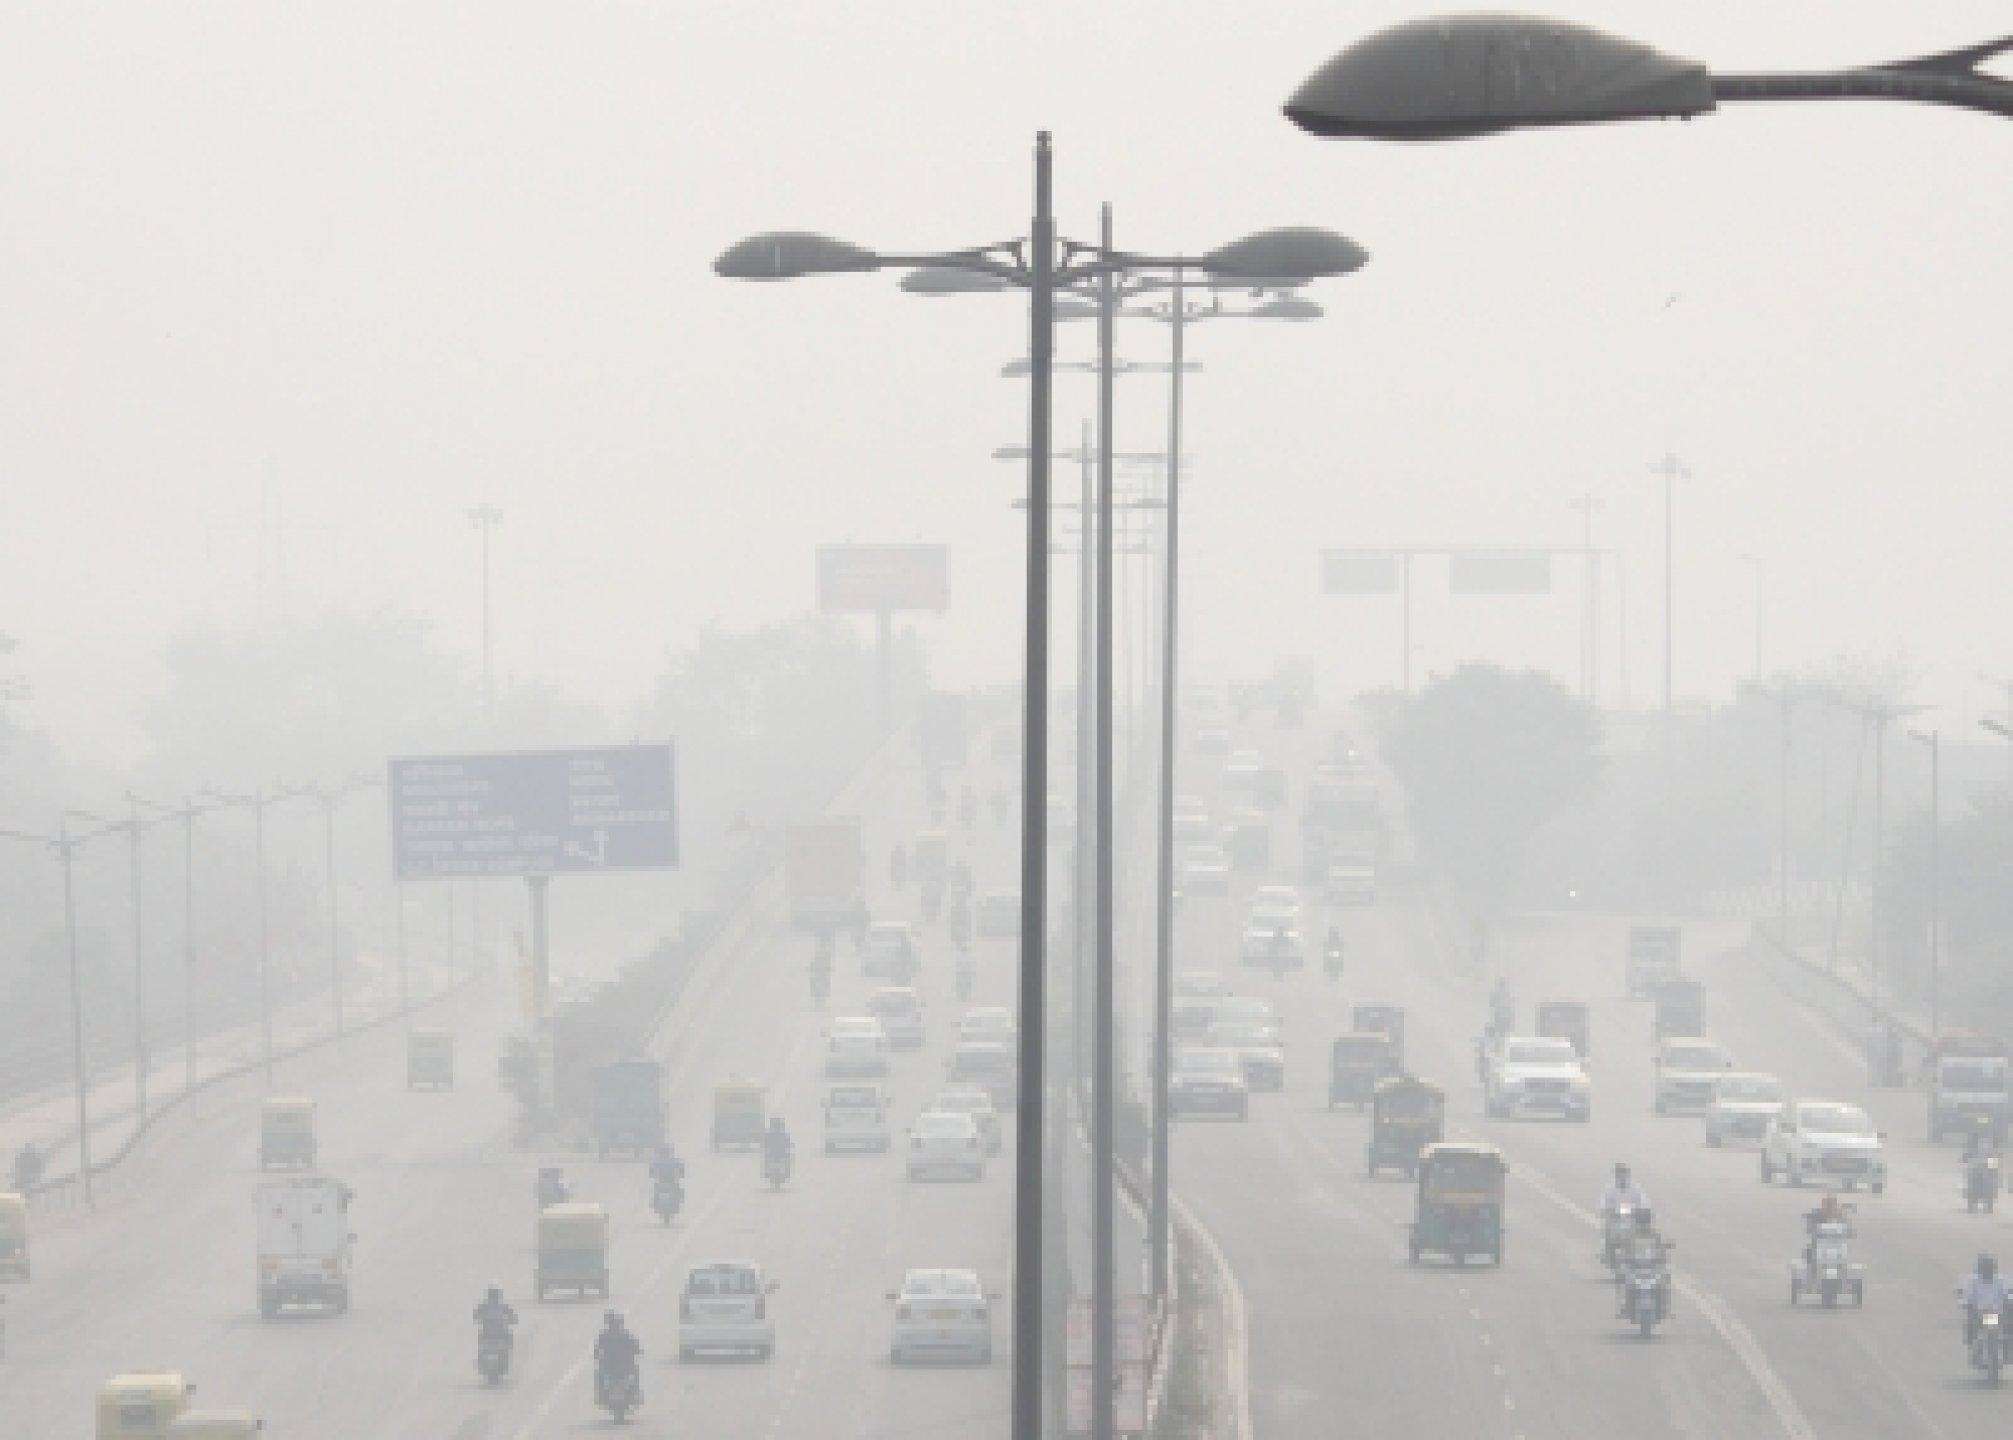 लैंडफिल की आग से राजधानी Delhi में वायु प्रदूषण, एमसीडी कमिश्नर तलब